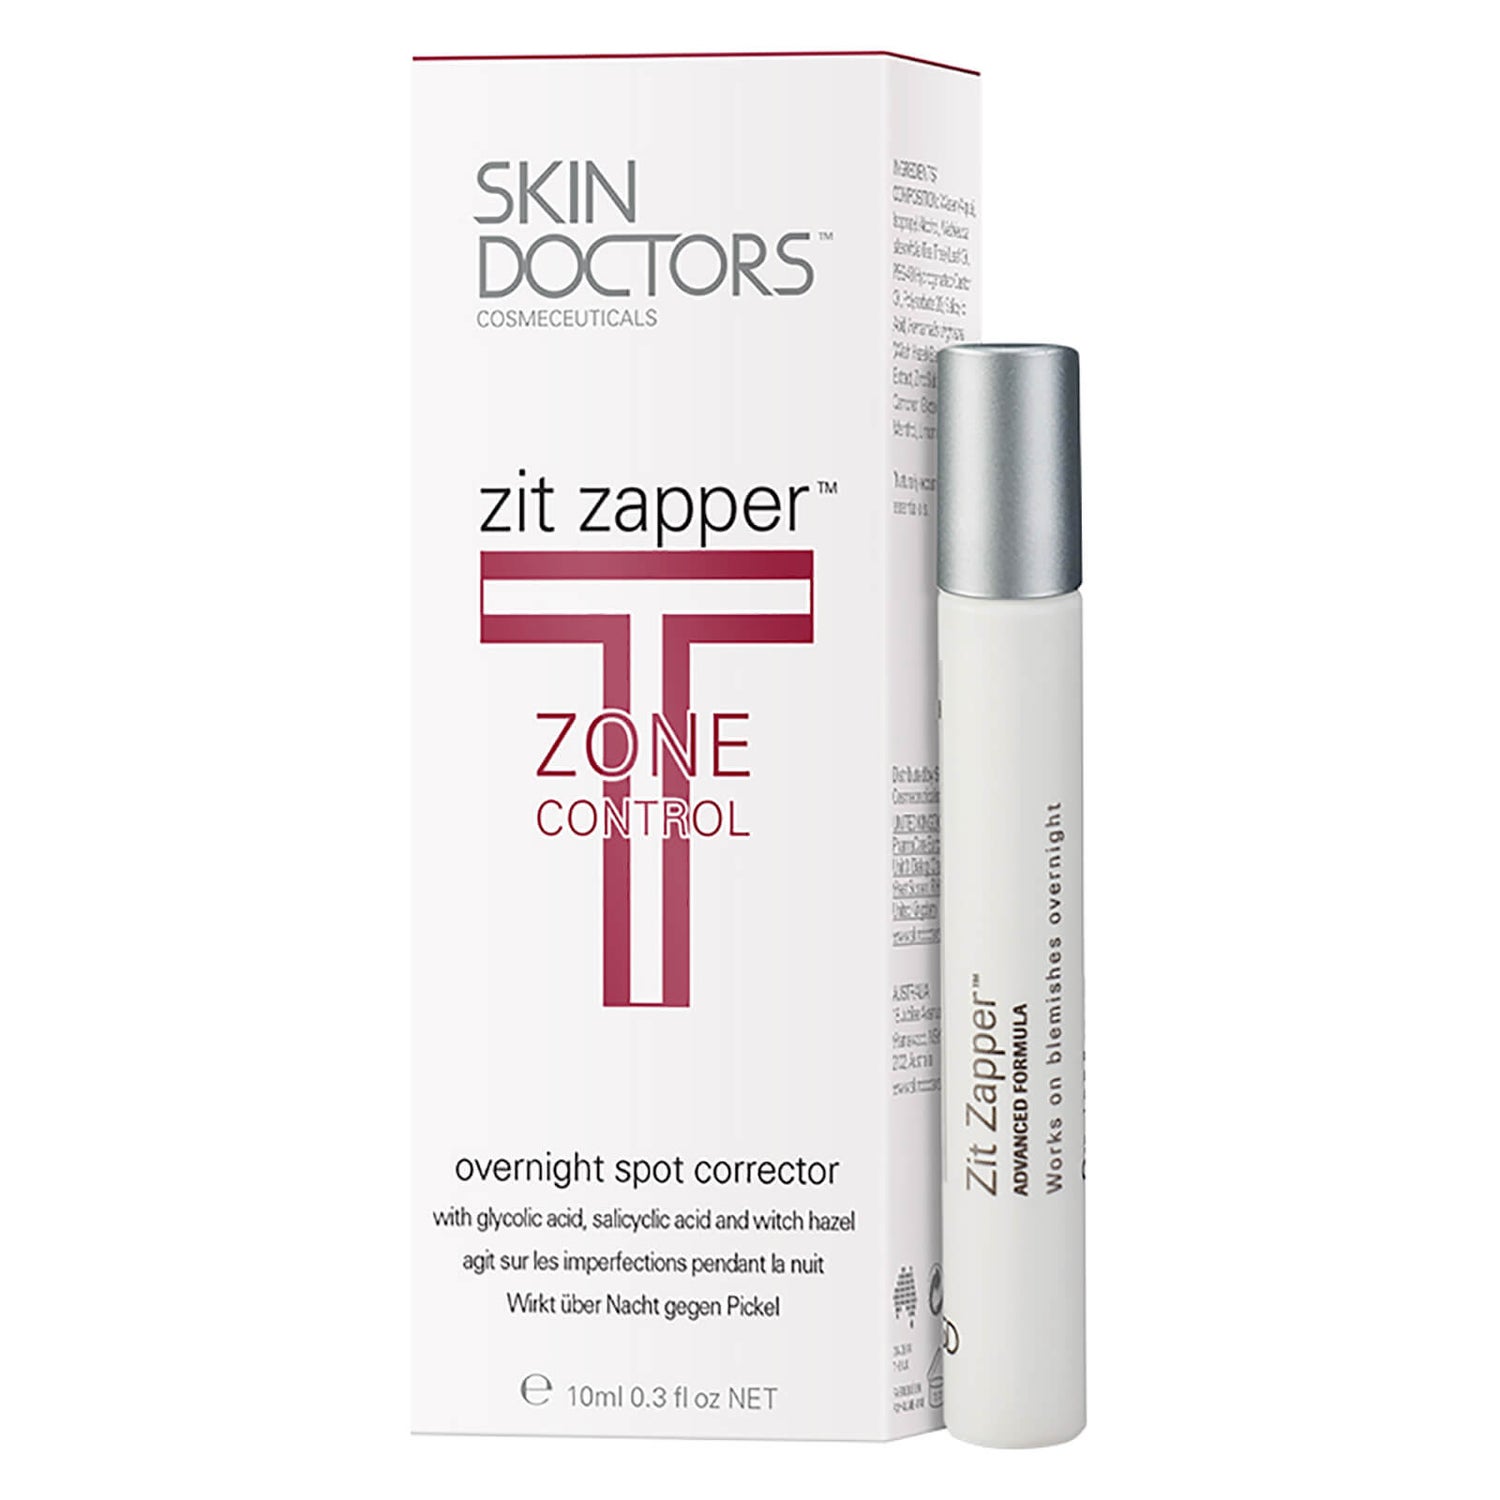 Skin Doctors Zit Zapper korektor na noc zwalczający wypryski (10 ml)